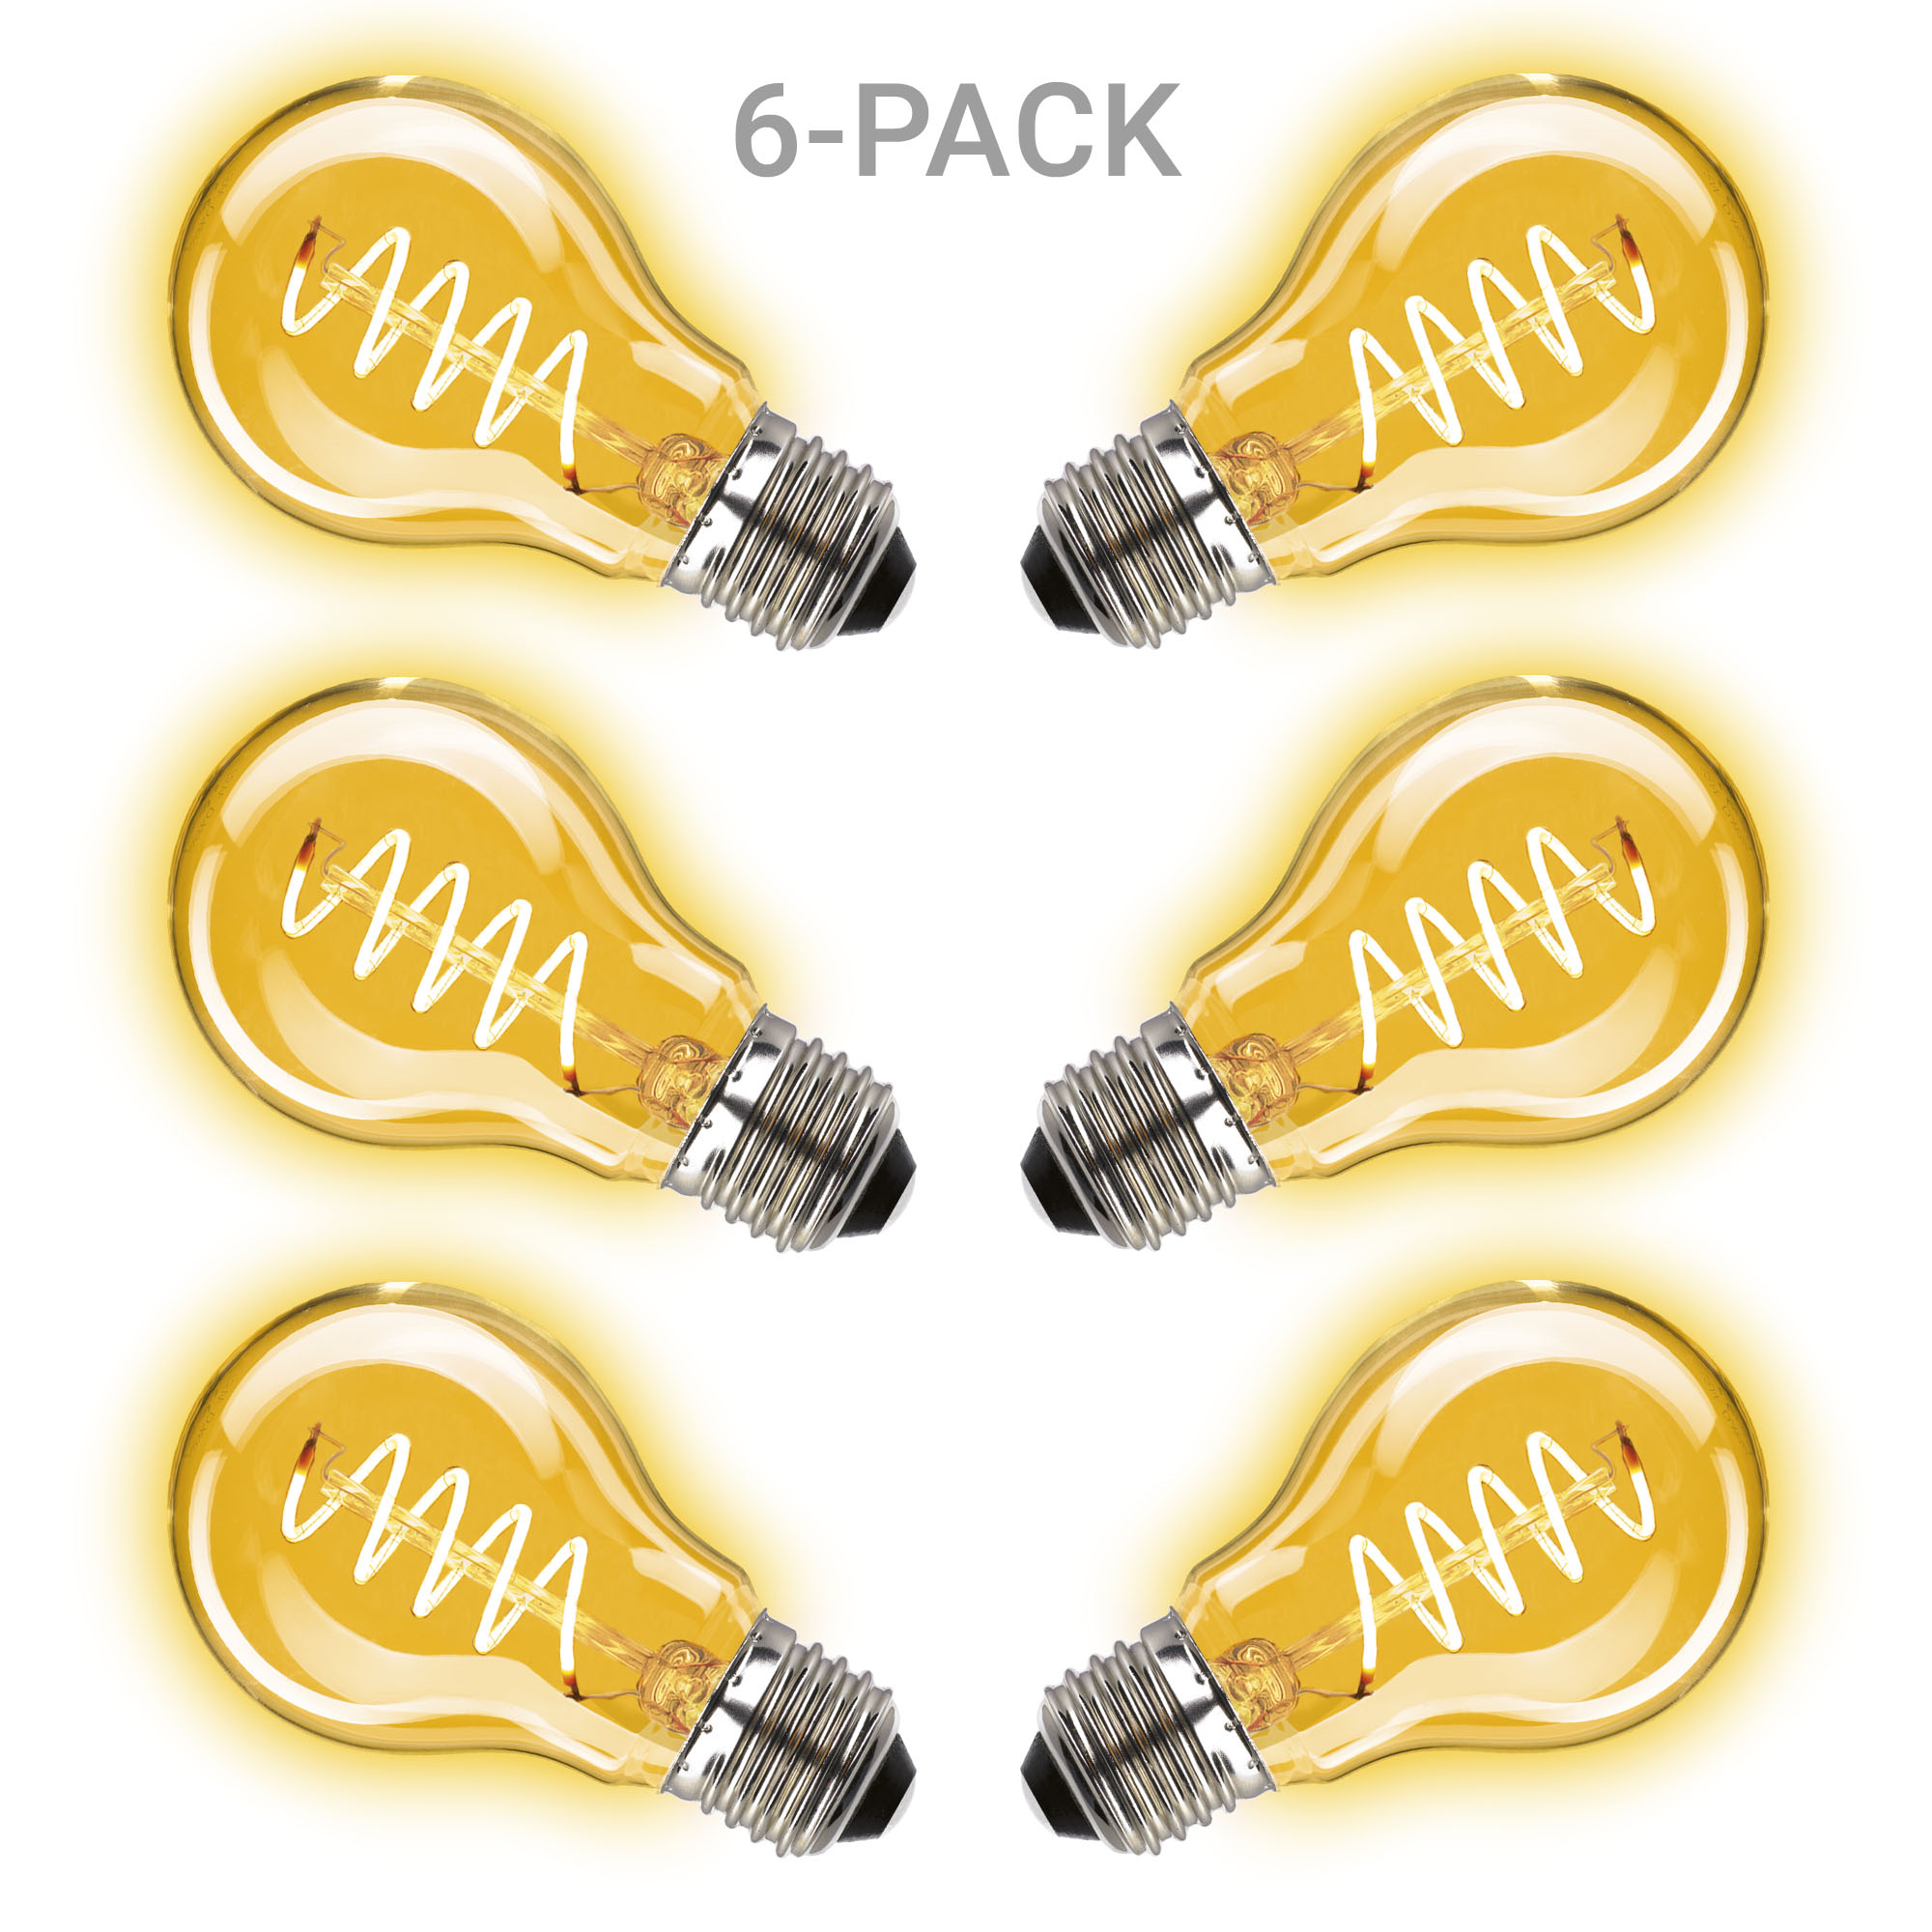 Classic Curl LED 2W 6-pack